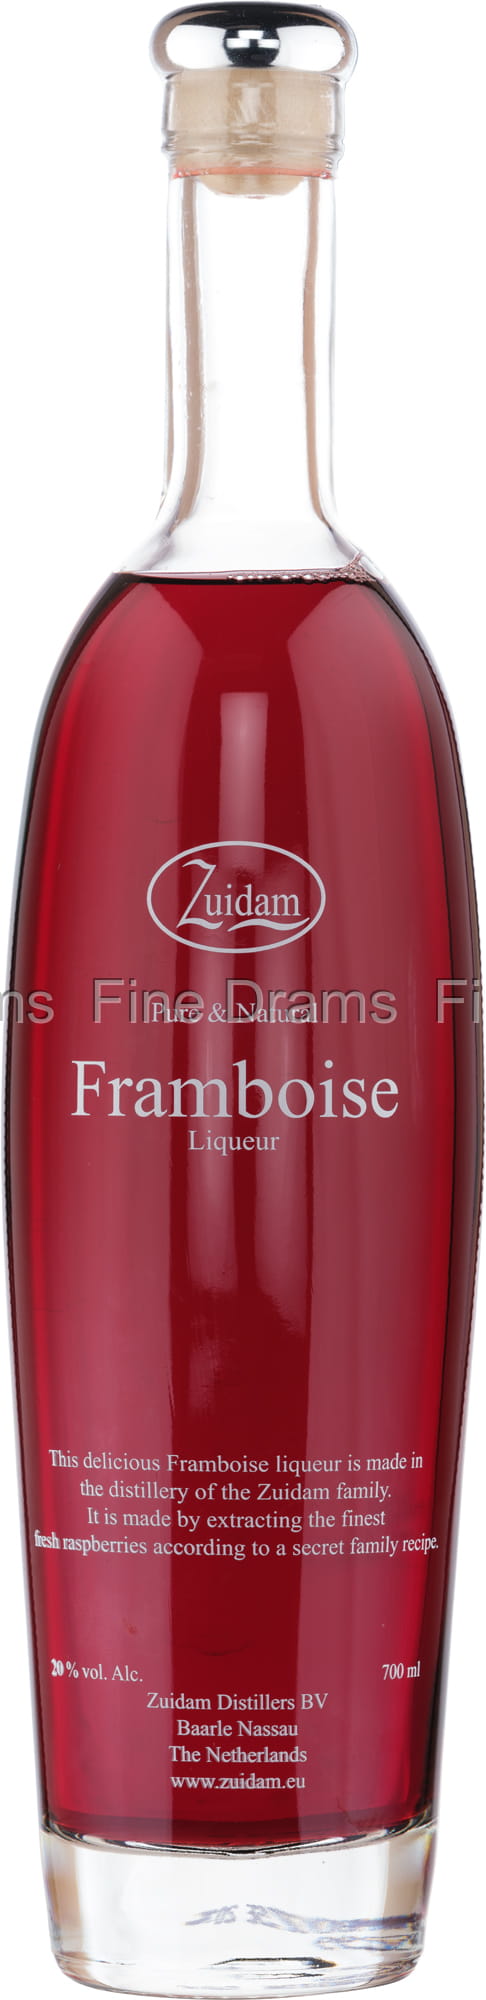 Zuidam Framboise Liqueur | Raspberry Liqueur